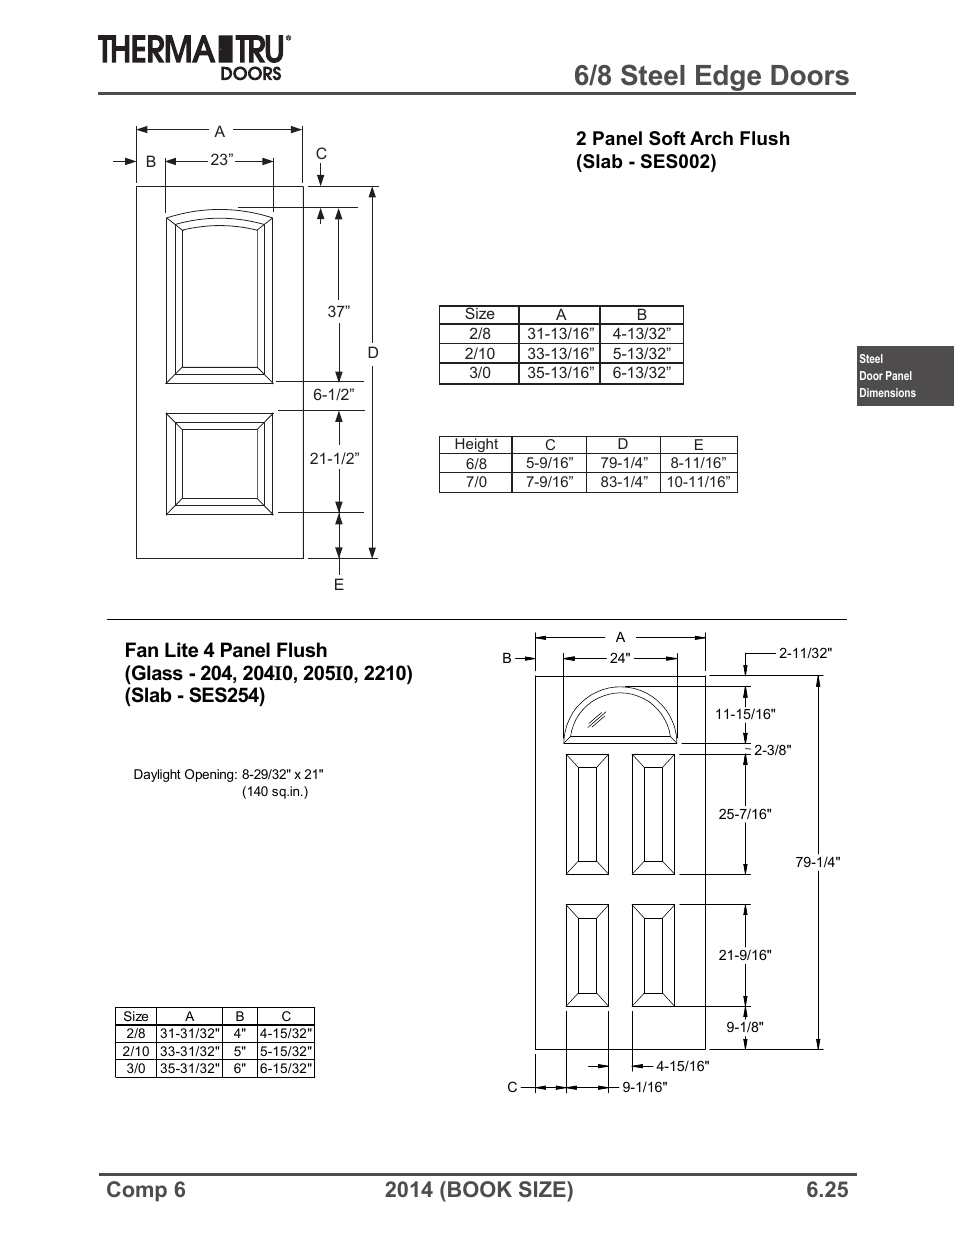 6/8 steel edge doors | Therma-Tru COMP 6 Steel Door Panel Dimensions ...